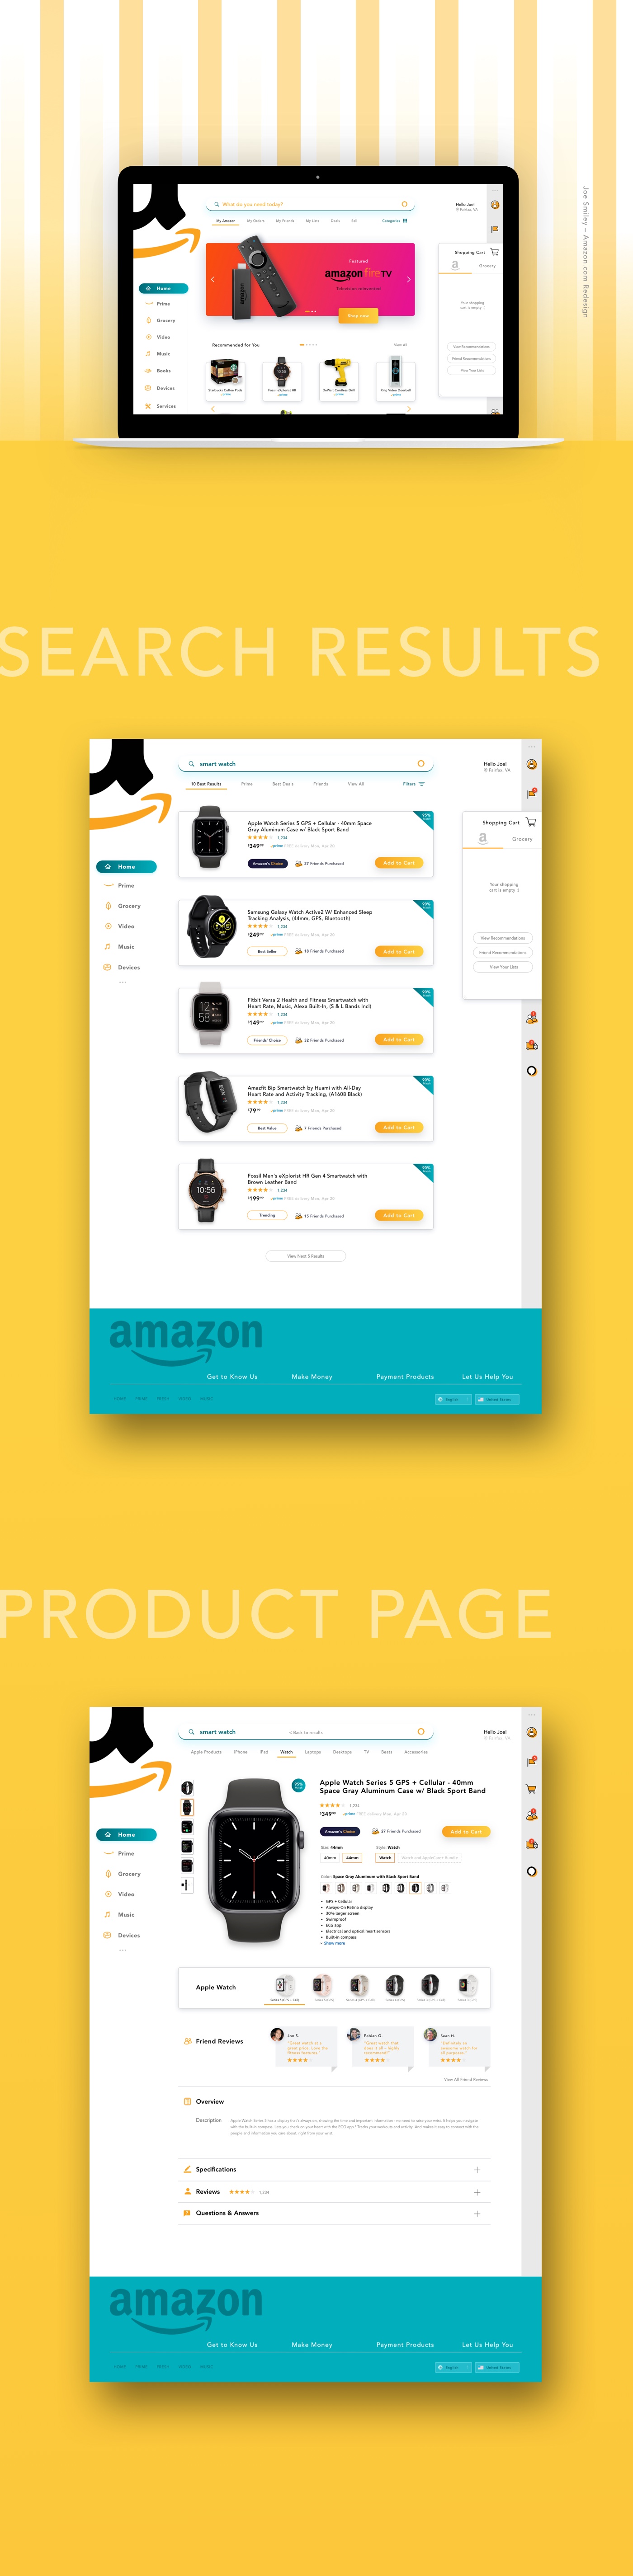 Joe Smiley - Amazon web redesign